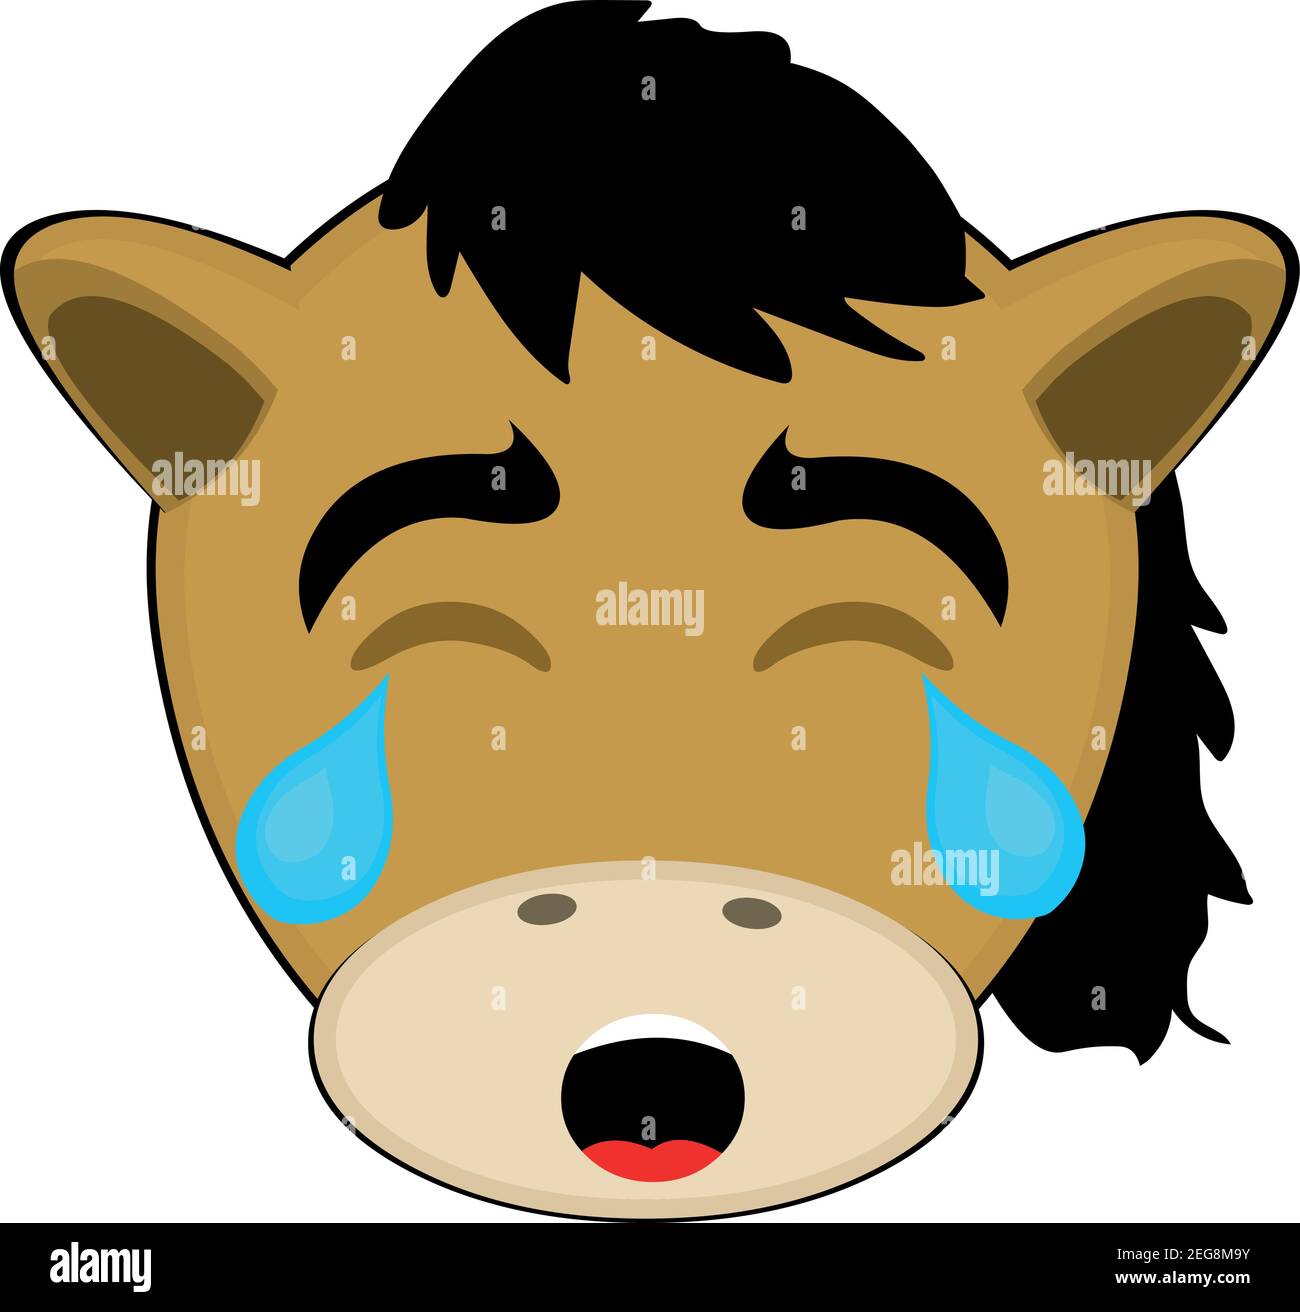 Vecteur émoticône illustration dessin animé d'une tête de poney avec une expression triste et pleurant avec une déchirure tombant de son oeil sur sa joue Illustration de Vecteur